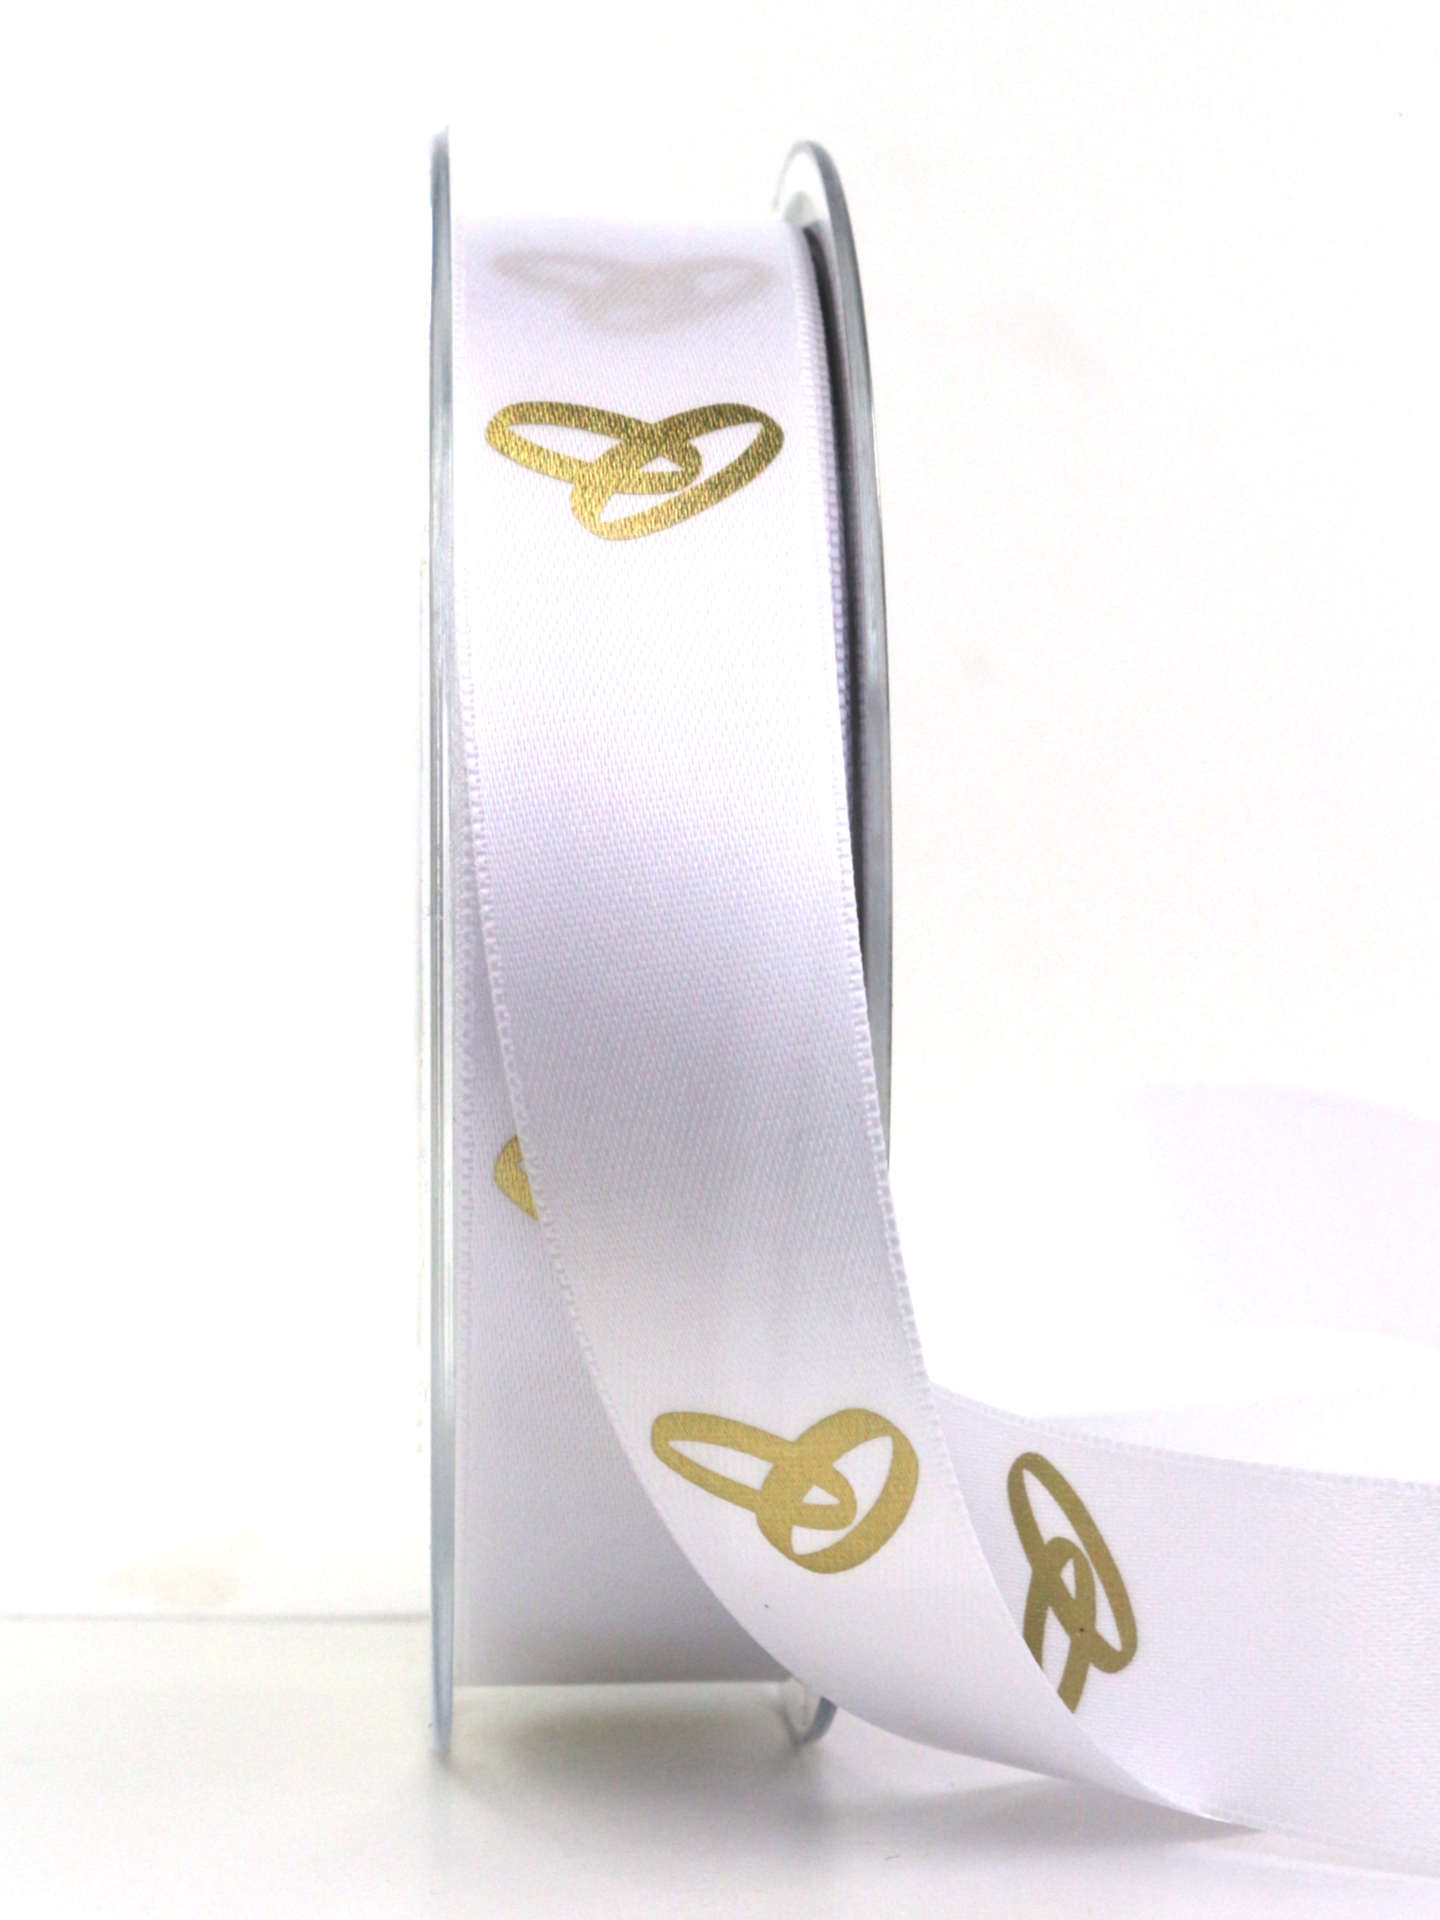 Feines Satinband mit goldenen Ringen, weiß, 25 mm breit, 20 m Rolle - hochzeit, geschenkband, geschenkband-fuer-anlaesse, hochzeitsdeko, anlasse